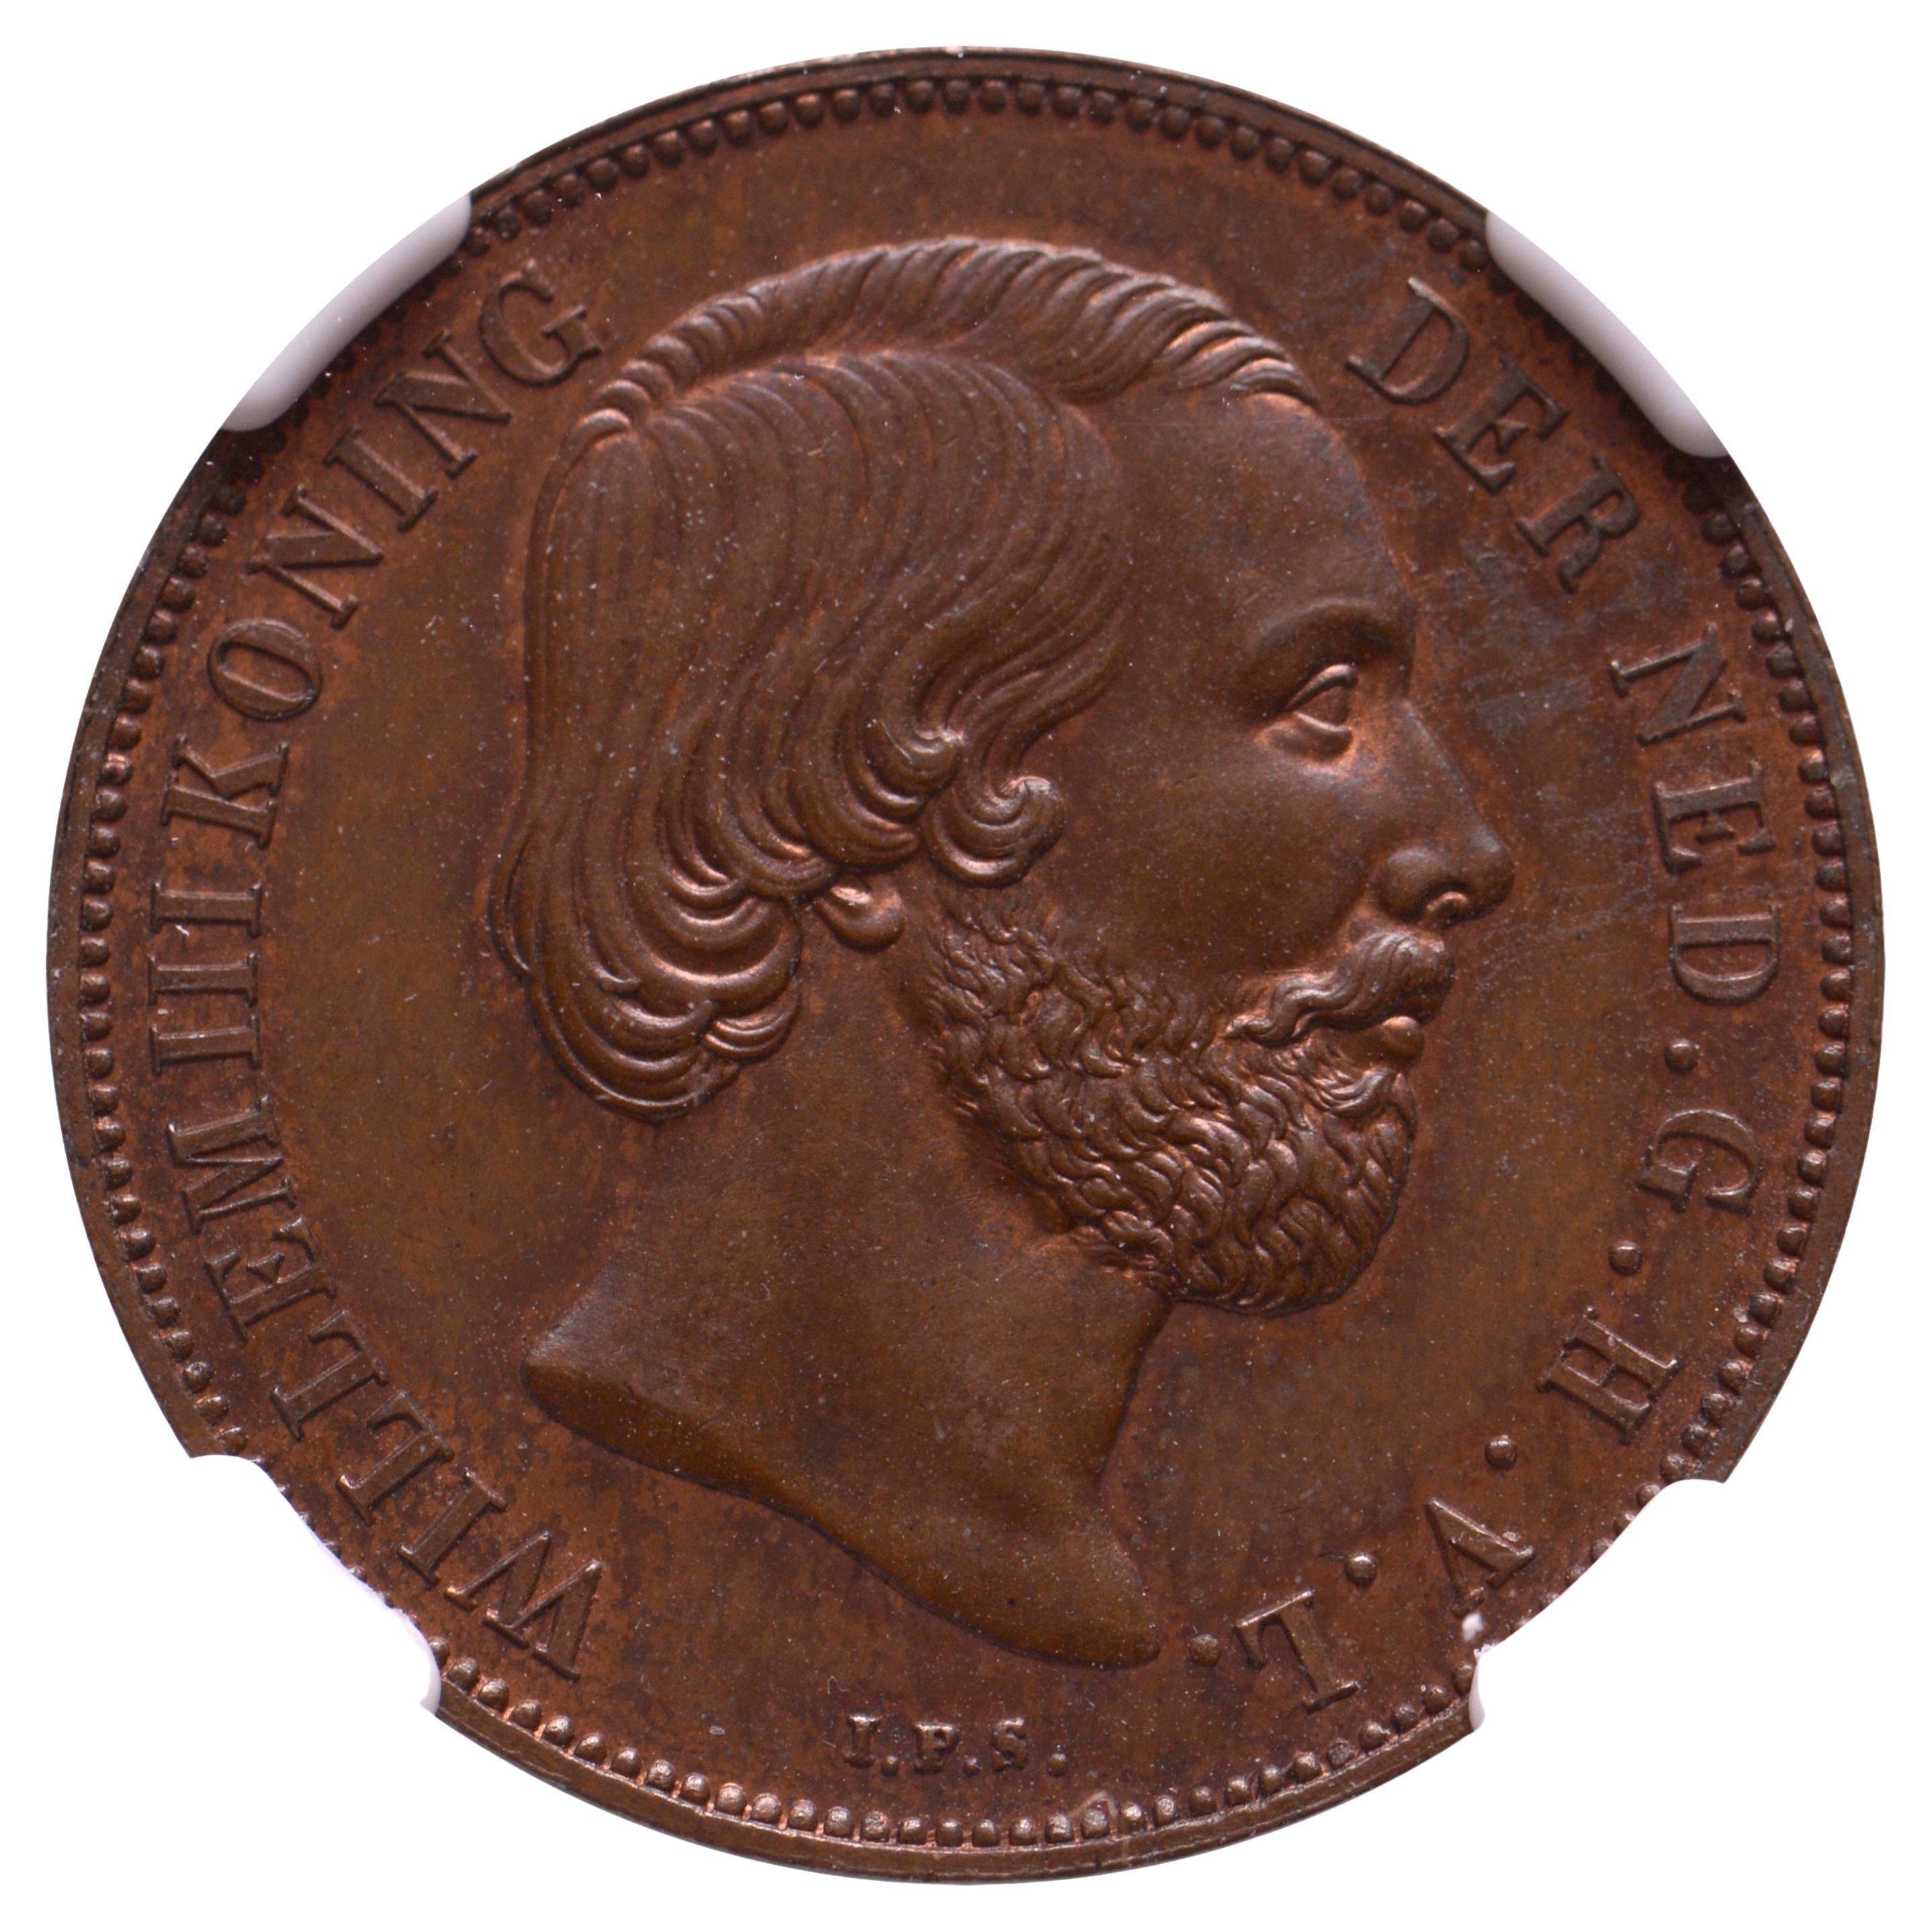 1 gulden William III NGC MS 64 BN – in bronze For Sale